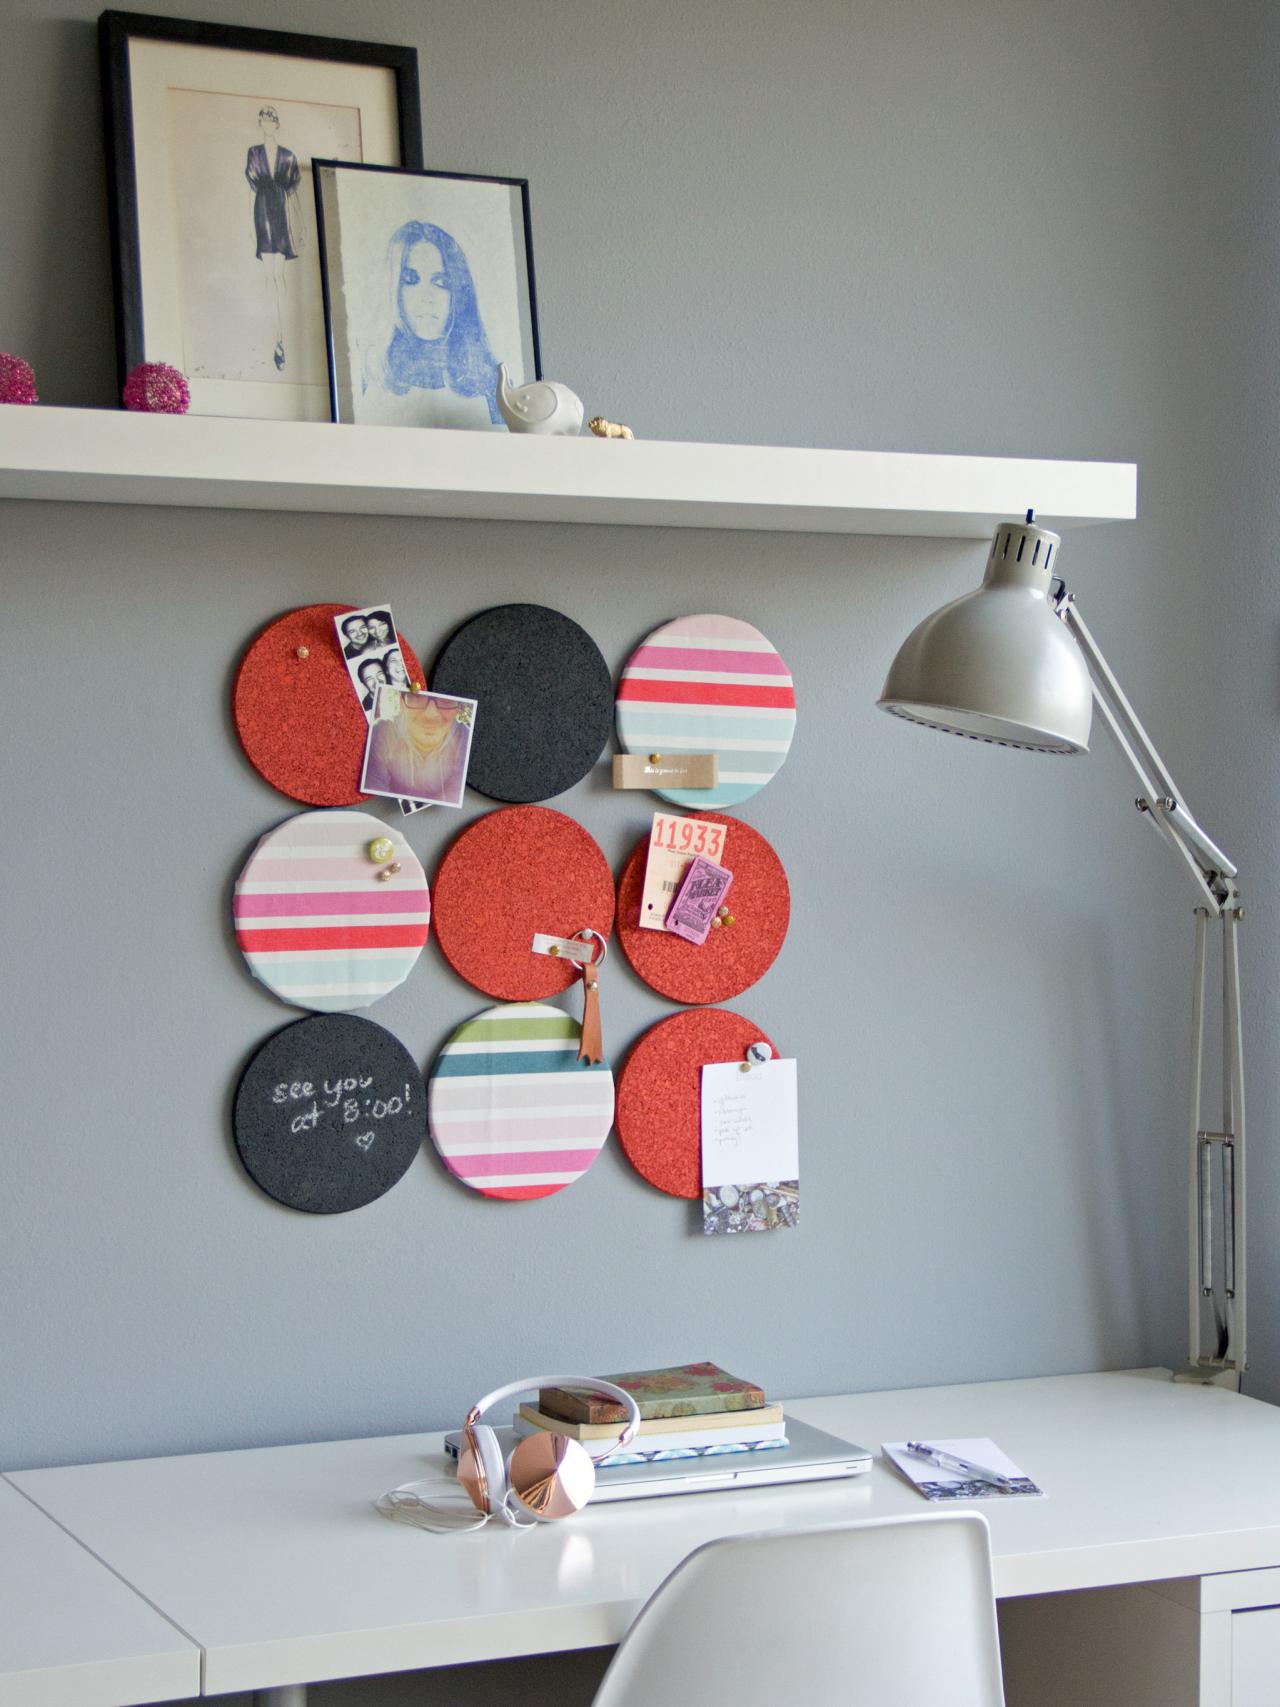 6 Diy Cork Boards For Your Dorm Room Hgtv S Decorating Design Blog Hgtv